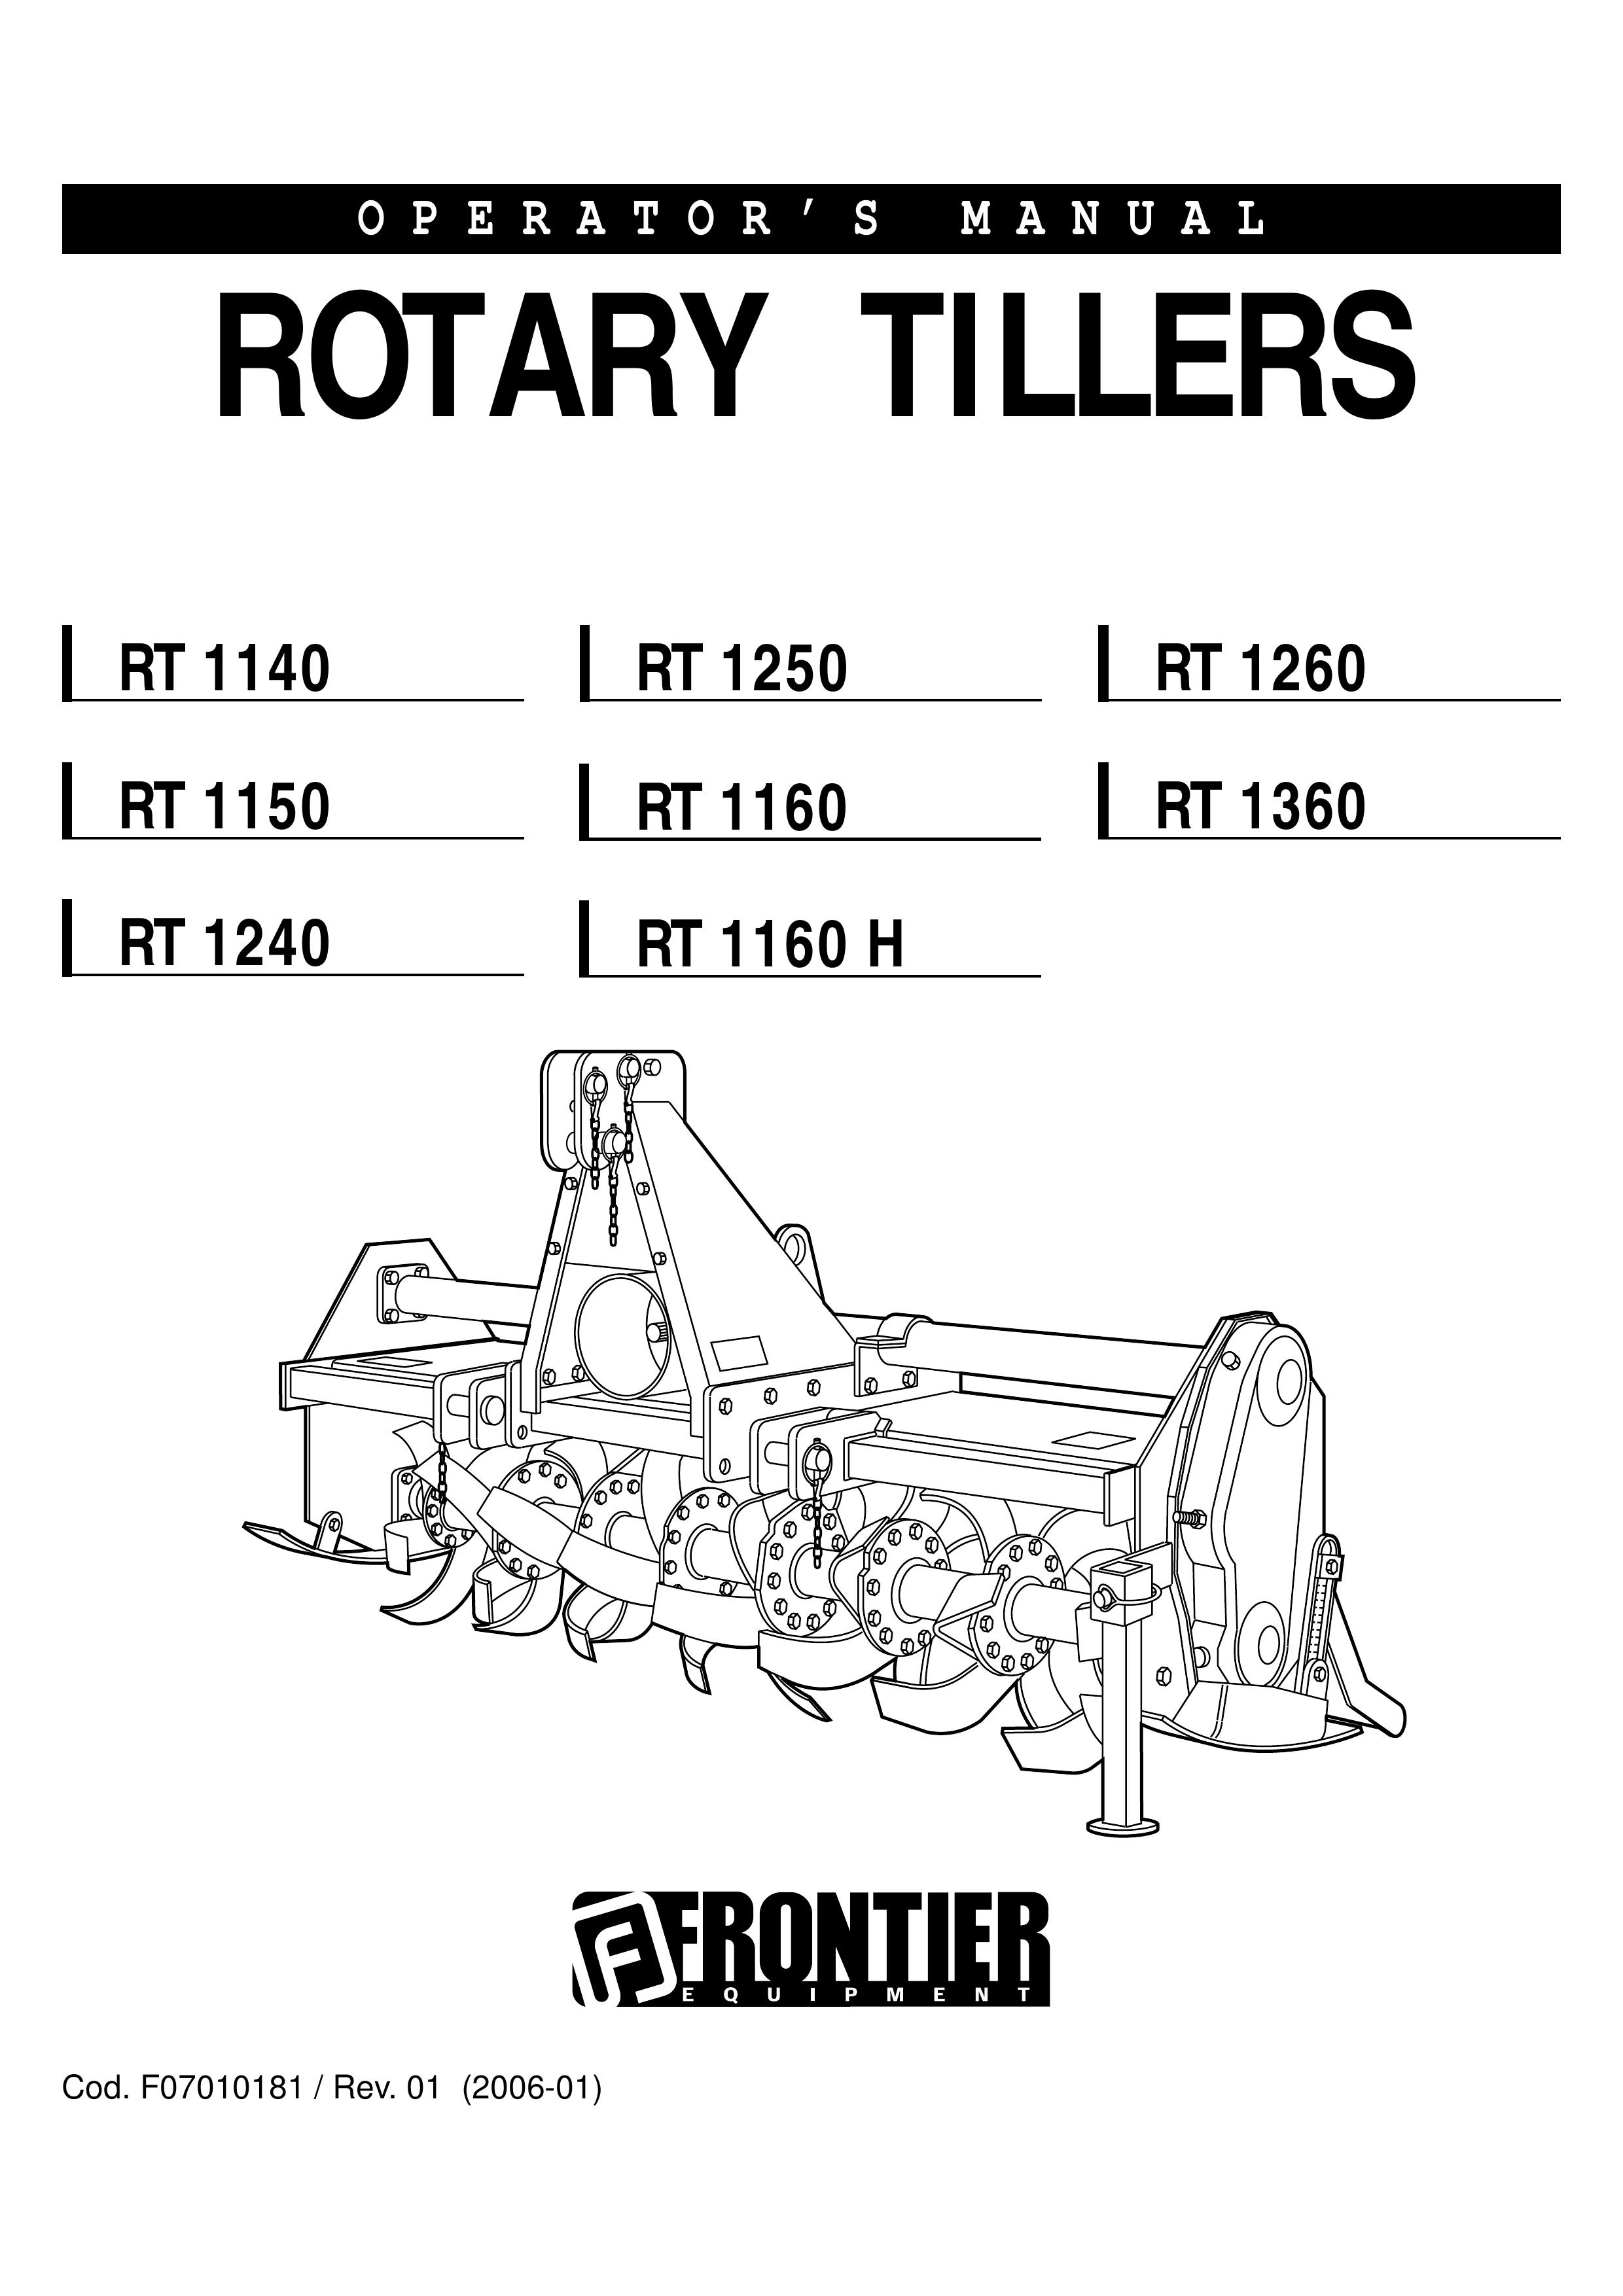 John Deere RT1360 Tiller User Manual